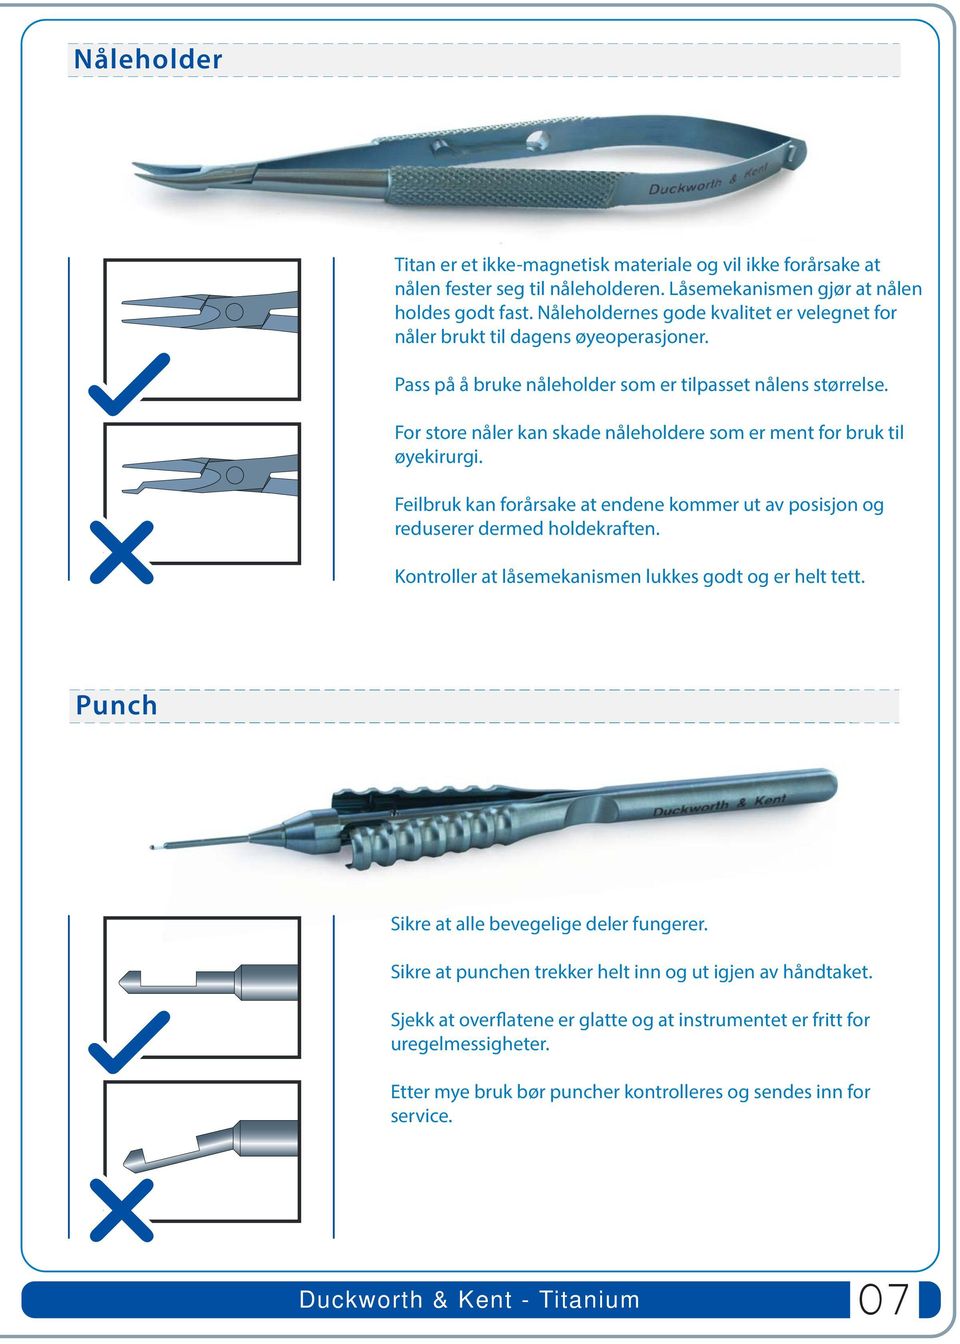 For store nåler kan skade nåleholdere som er ment for bruk til øyekirurgi. Feilbruk kan forårsake at endene kommer ut av posisjon og reduserer dermed holdekraften.